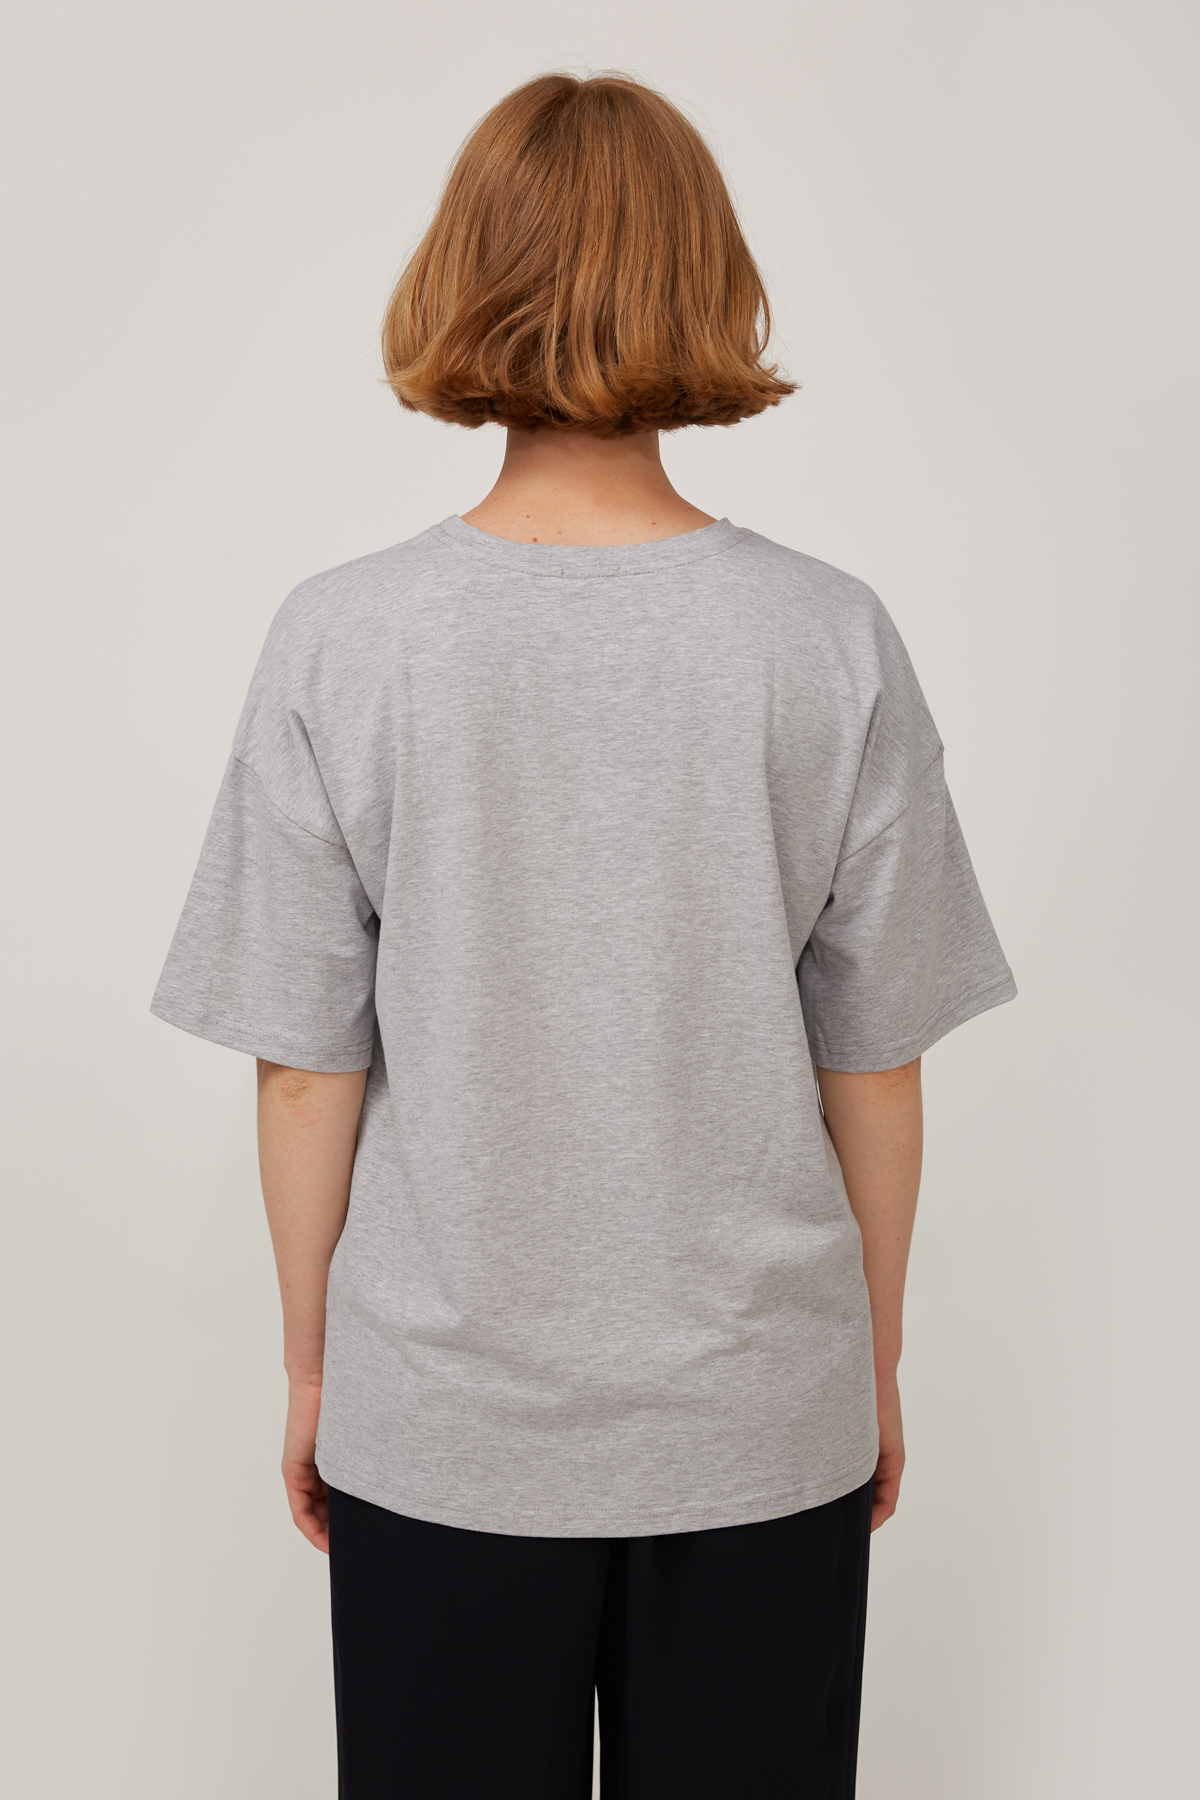 Сіро-меланжева трикотажна футболка з написом "Міста", фото 3